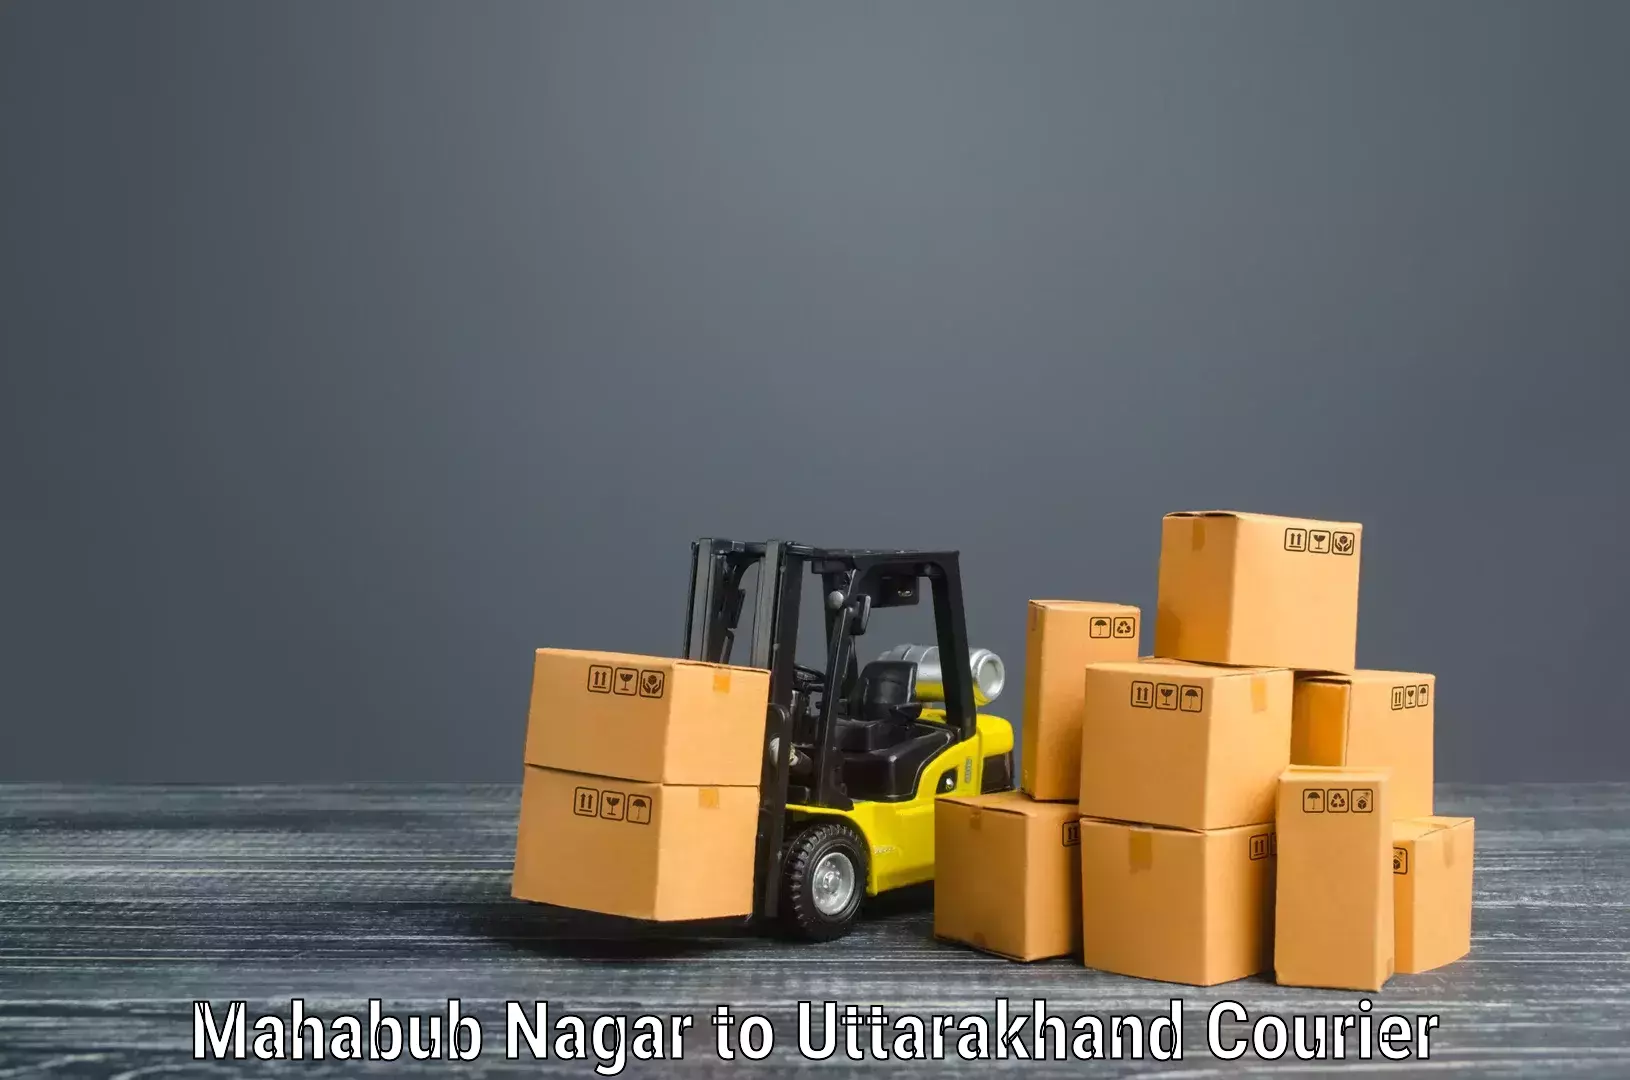 Quality moving company Mahabub Nagar to Kashipur